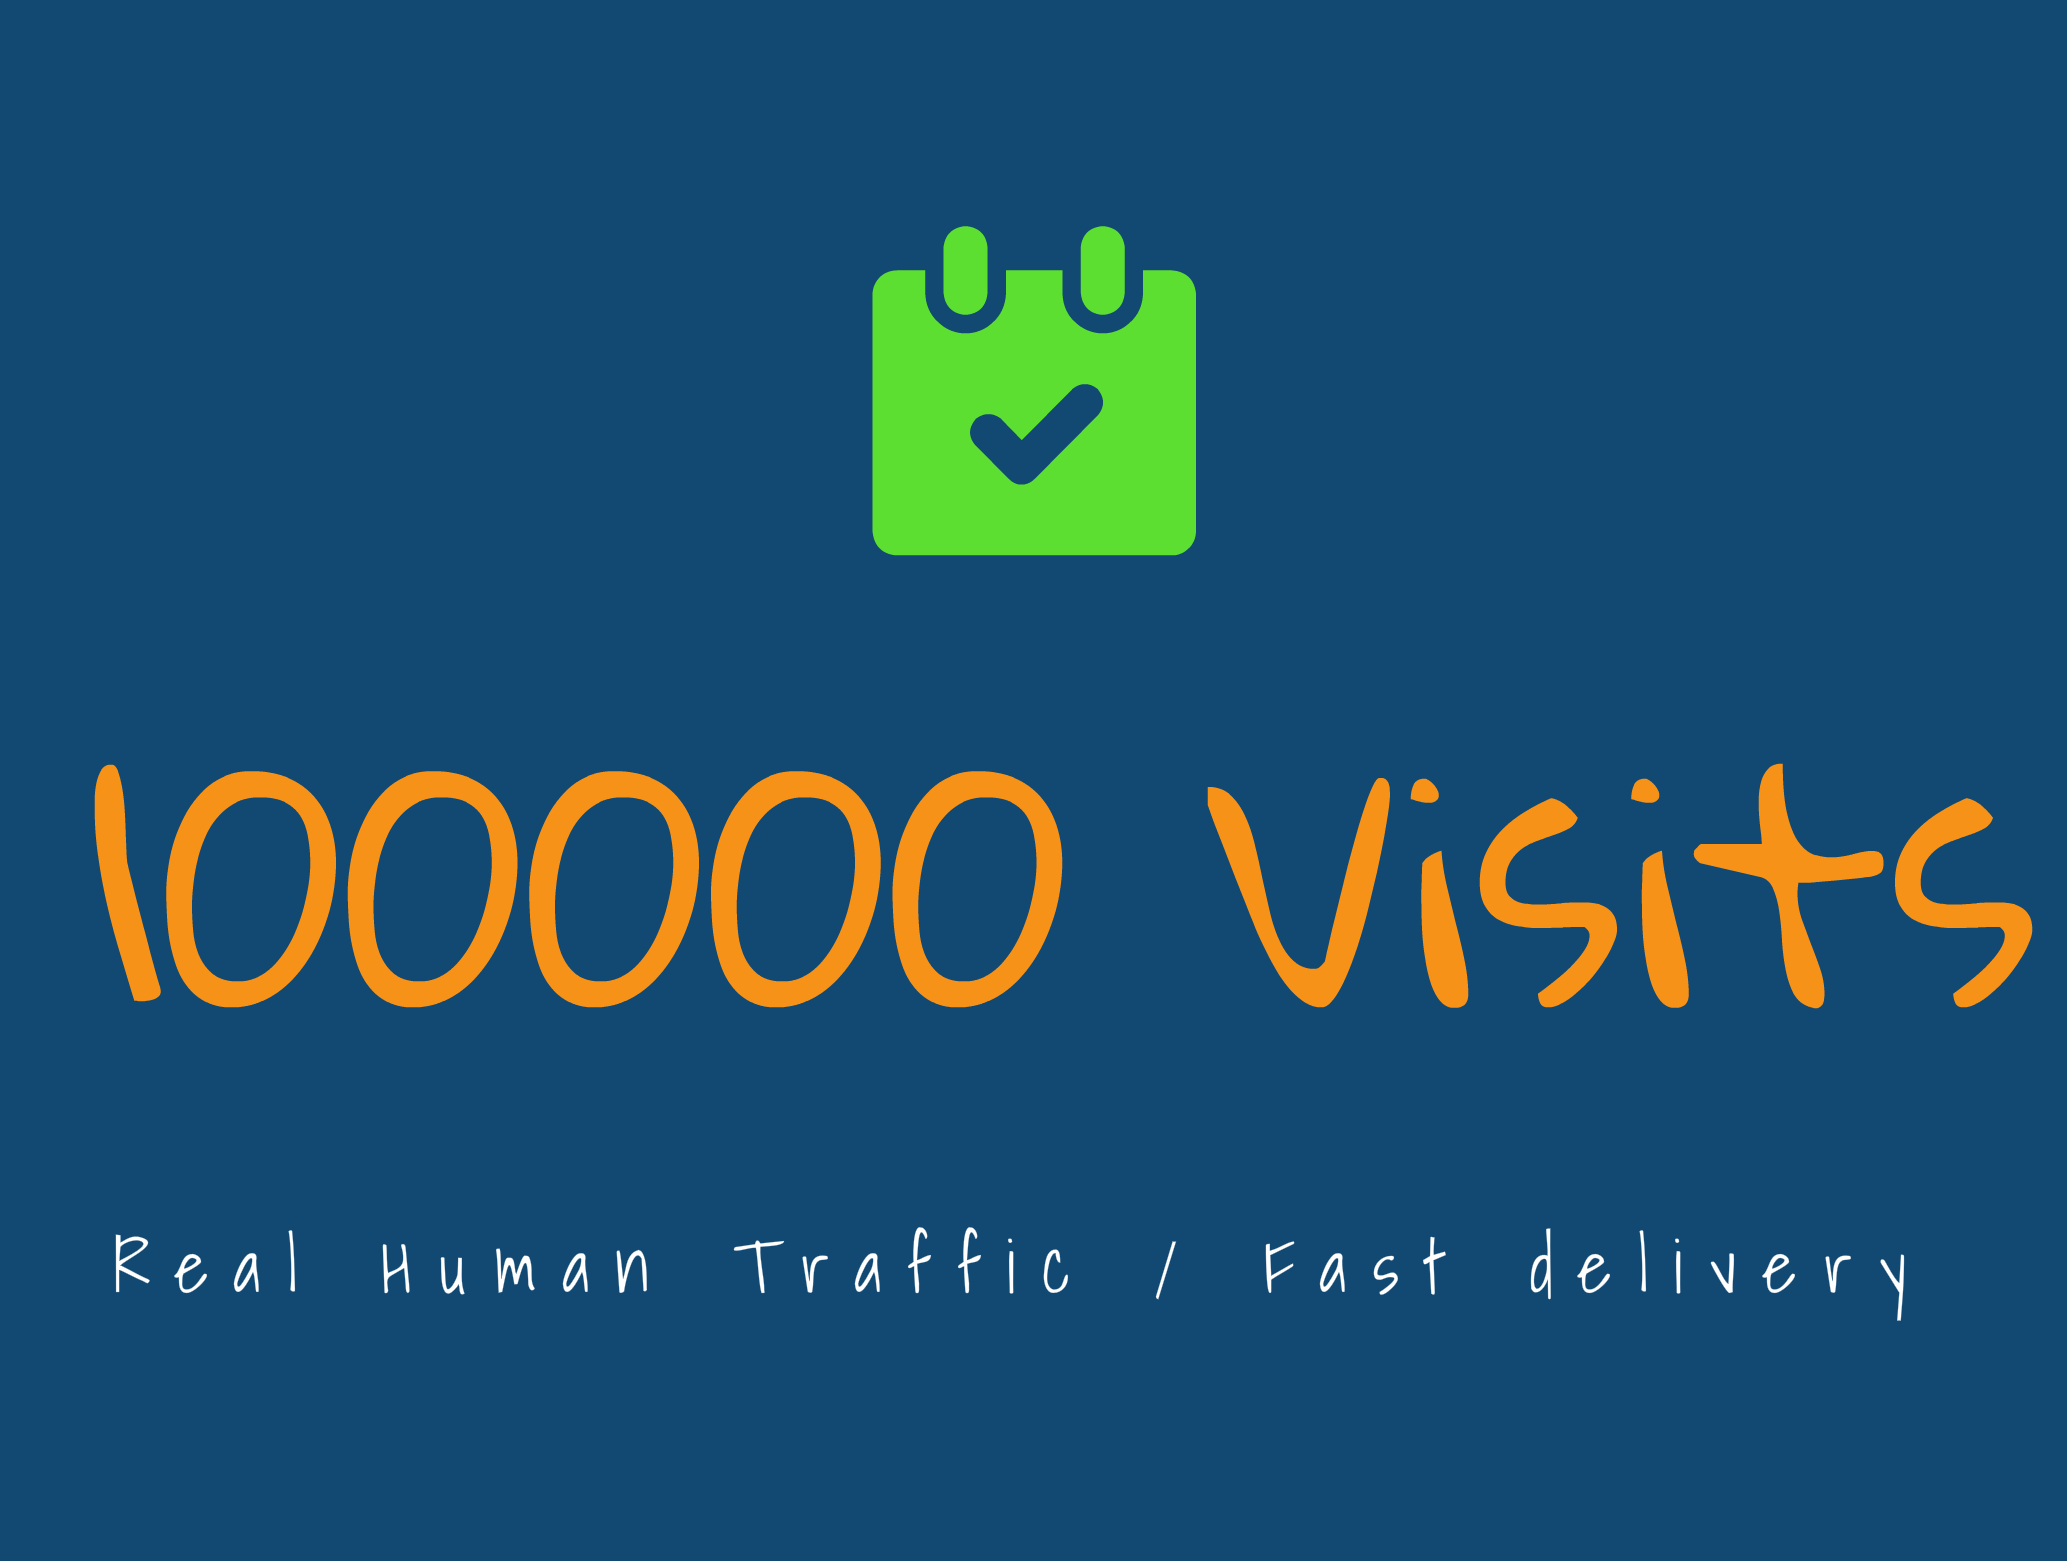 WEBSITE TRAFFIC - 100.000 VISITS